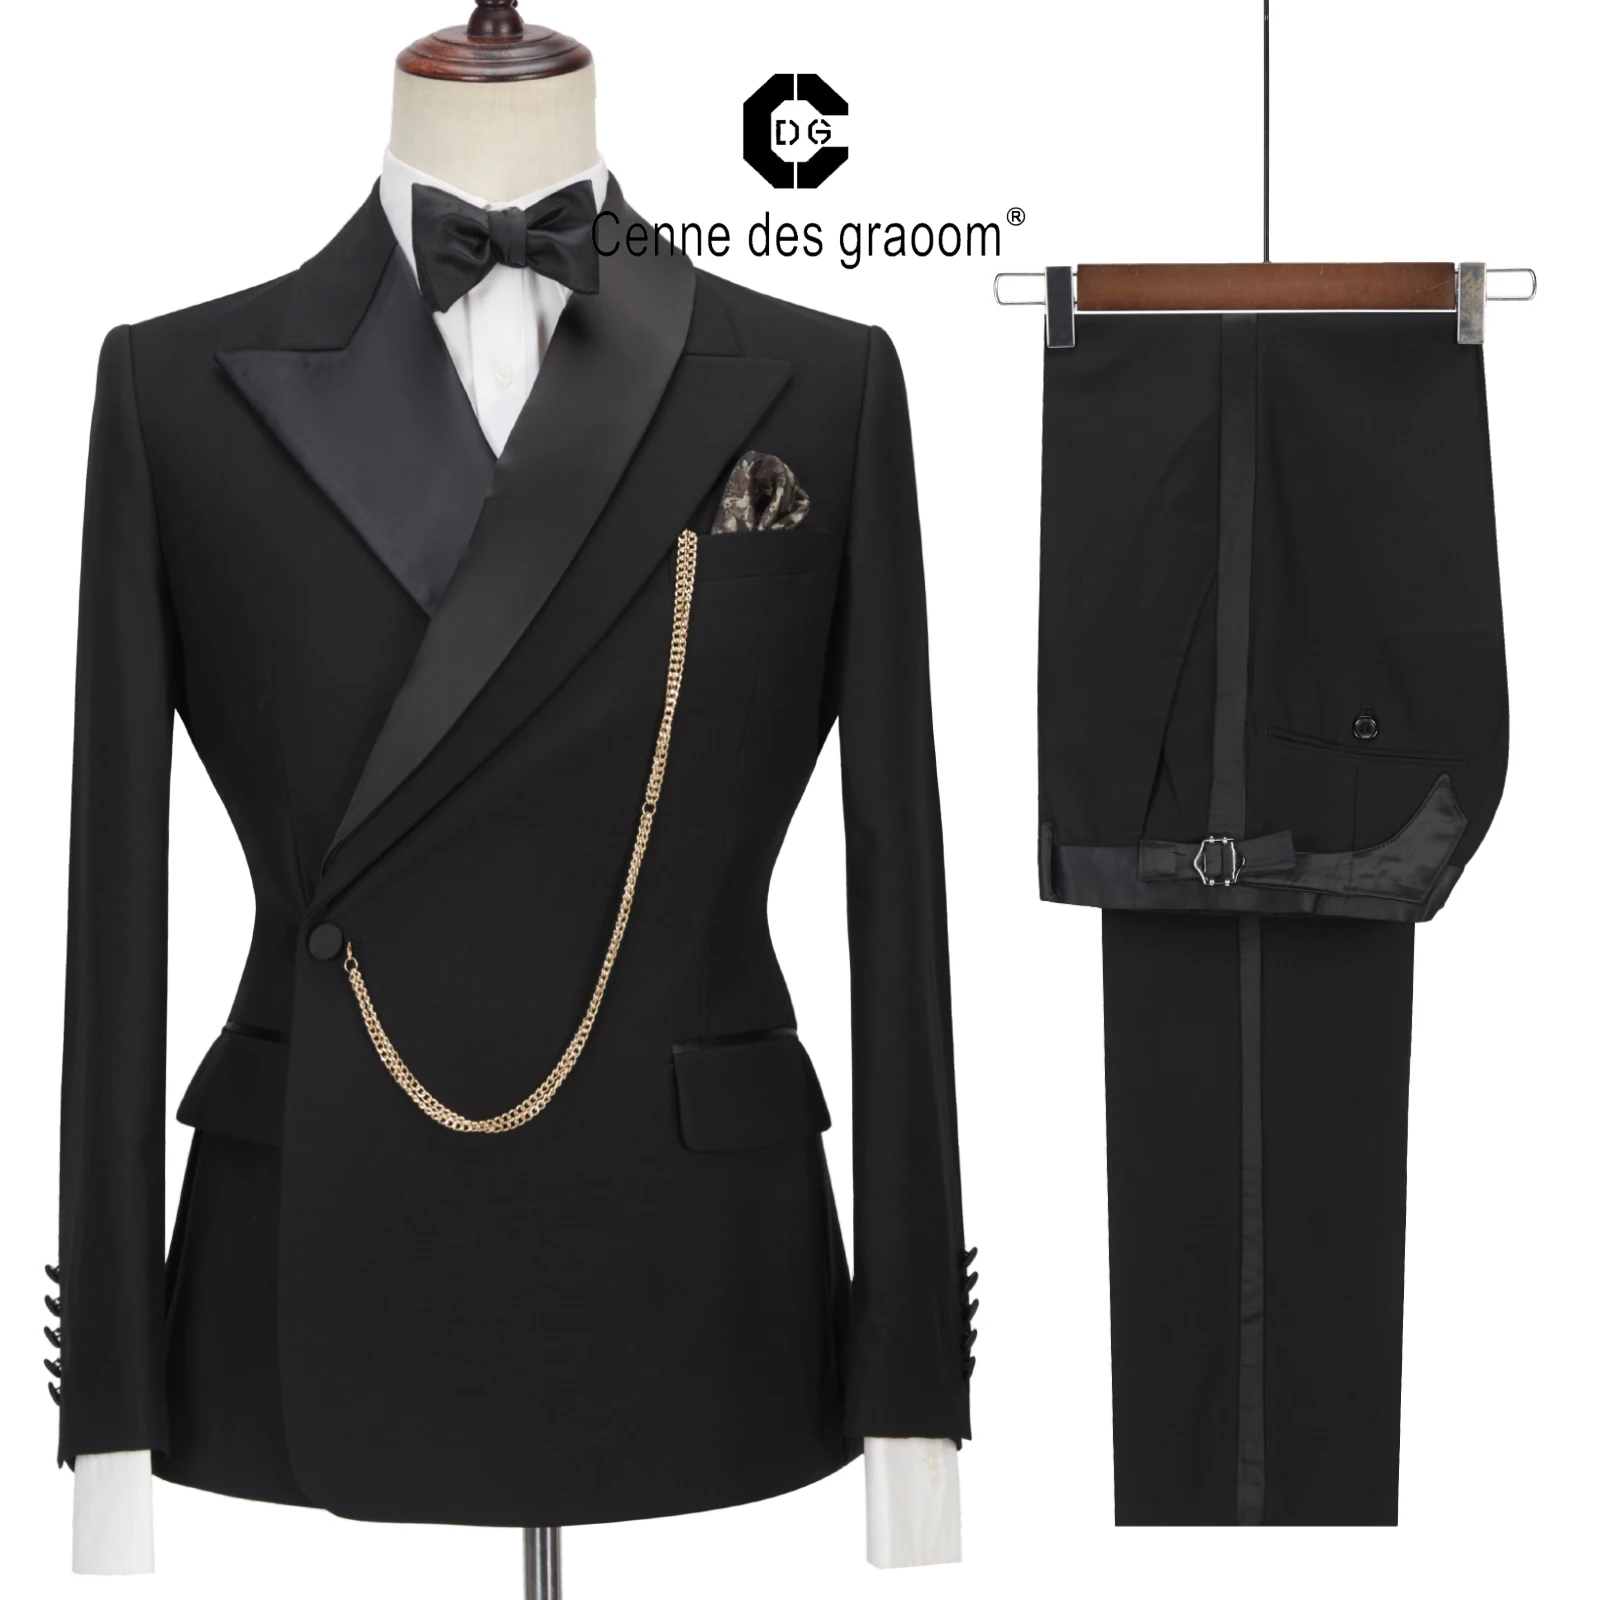 

Новейший дизайн пальто Cenne Des Graoom, мужские костюмы, индивидуальный смокинг, 2 предмета, Блейзер, Свадебная вечеринка, певец, костюм жениха, Муж...